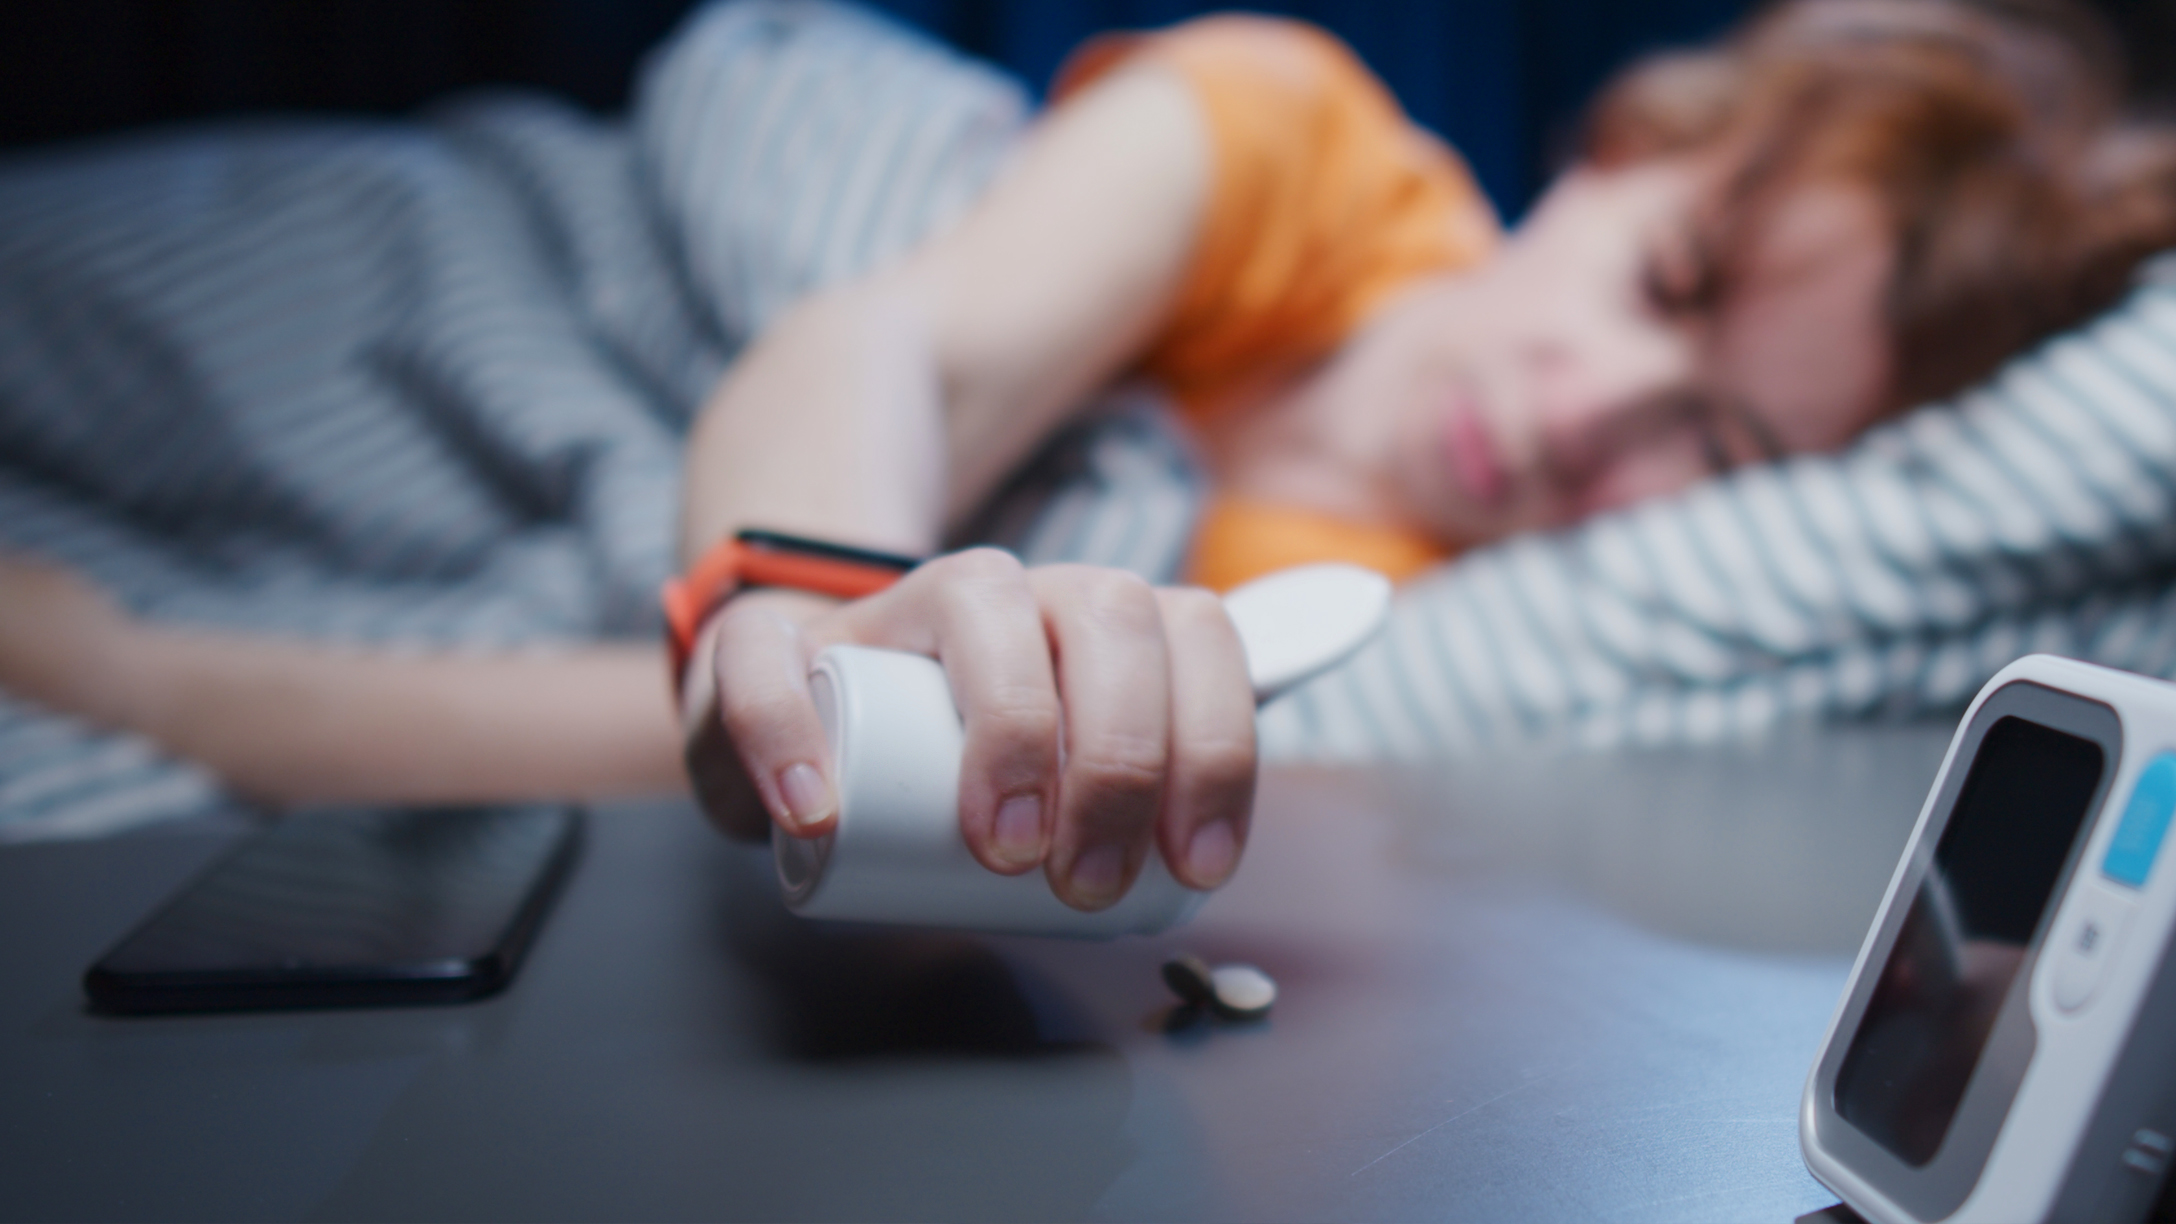 trazodone for insomnia vs depression